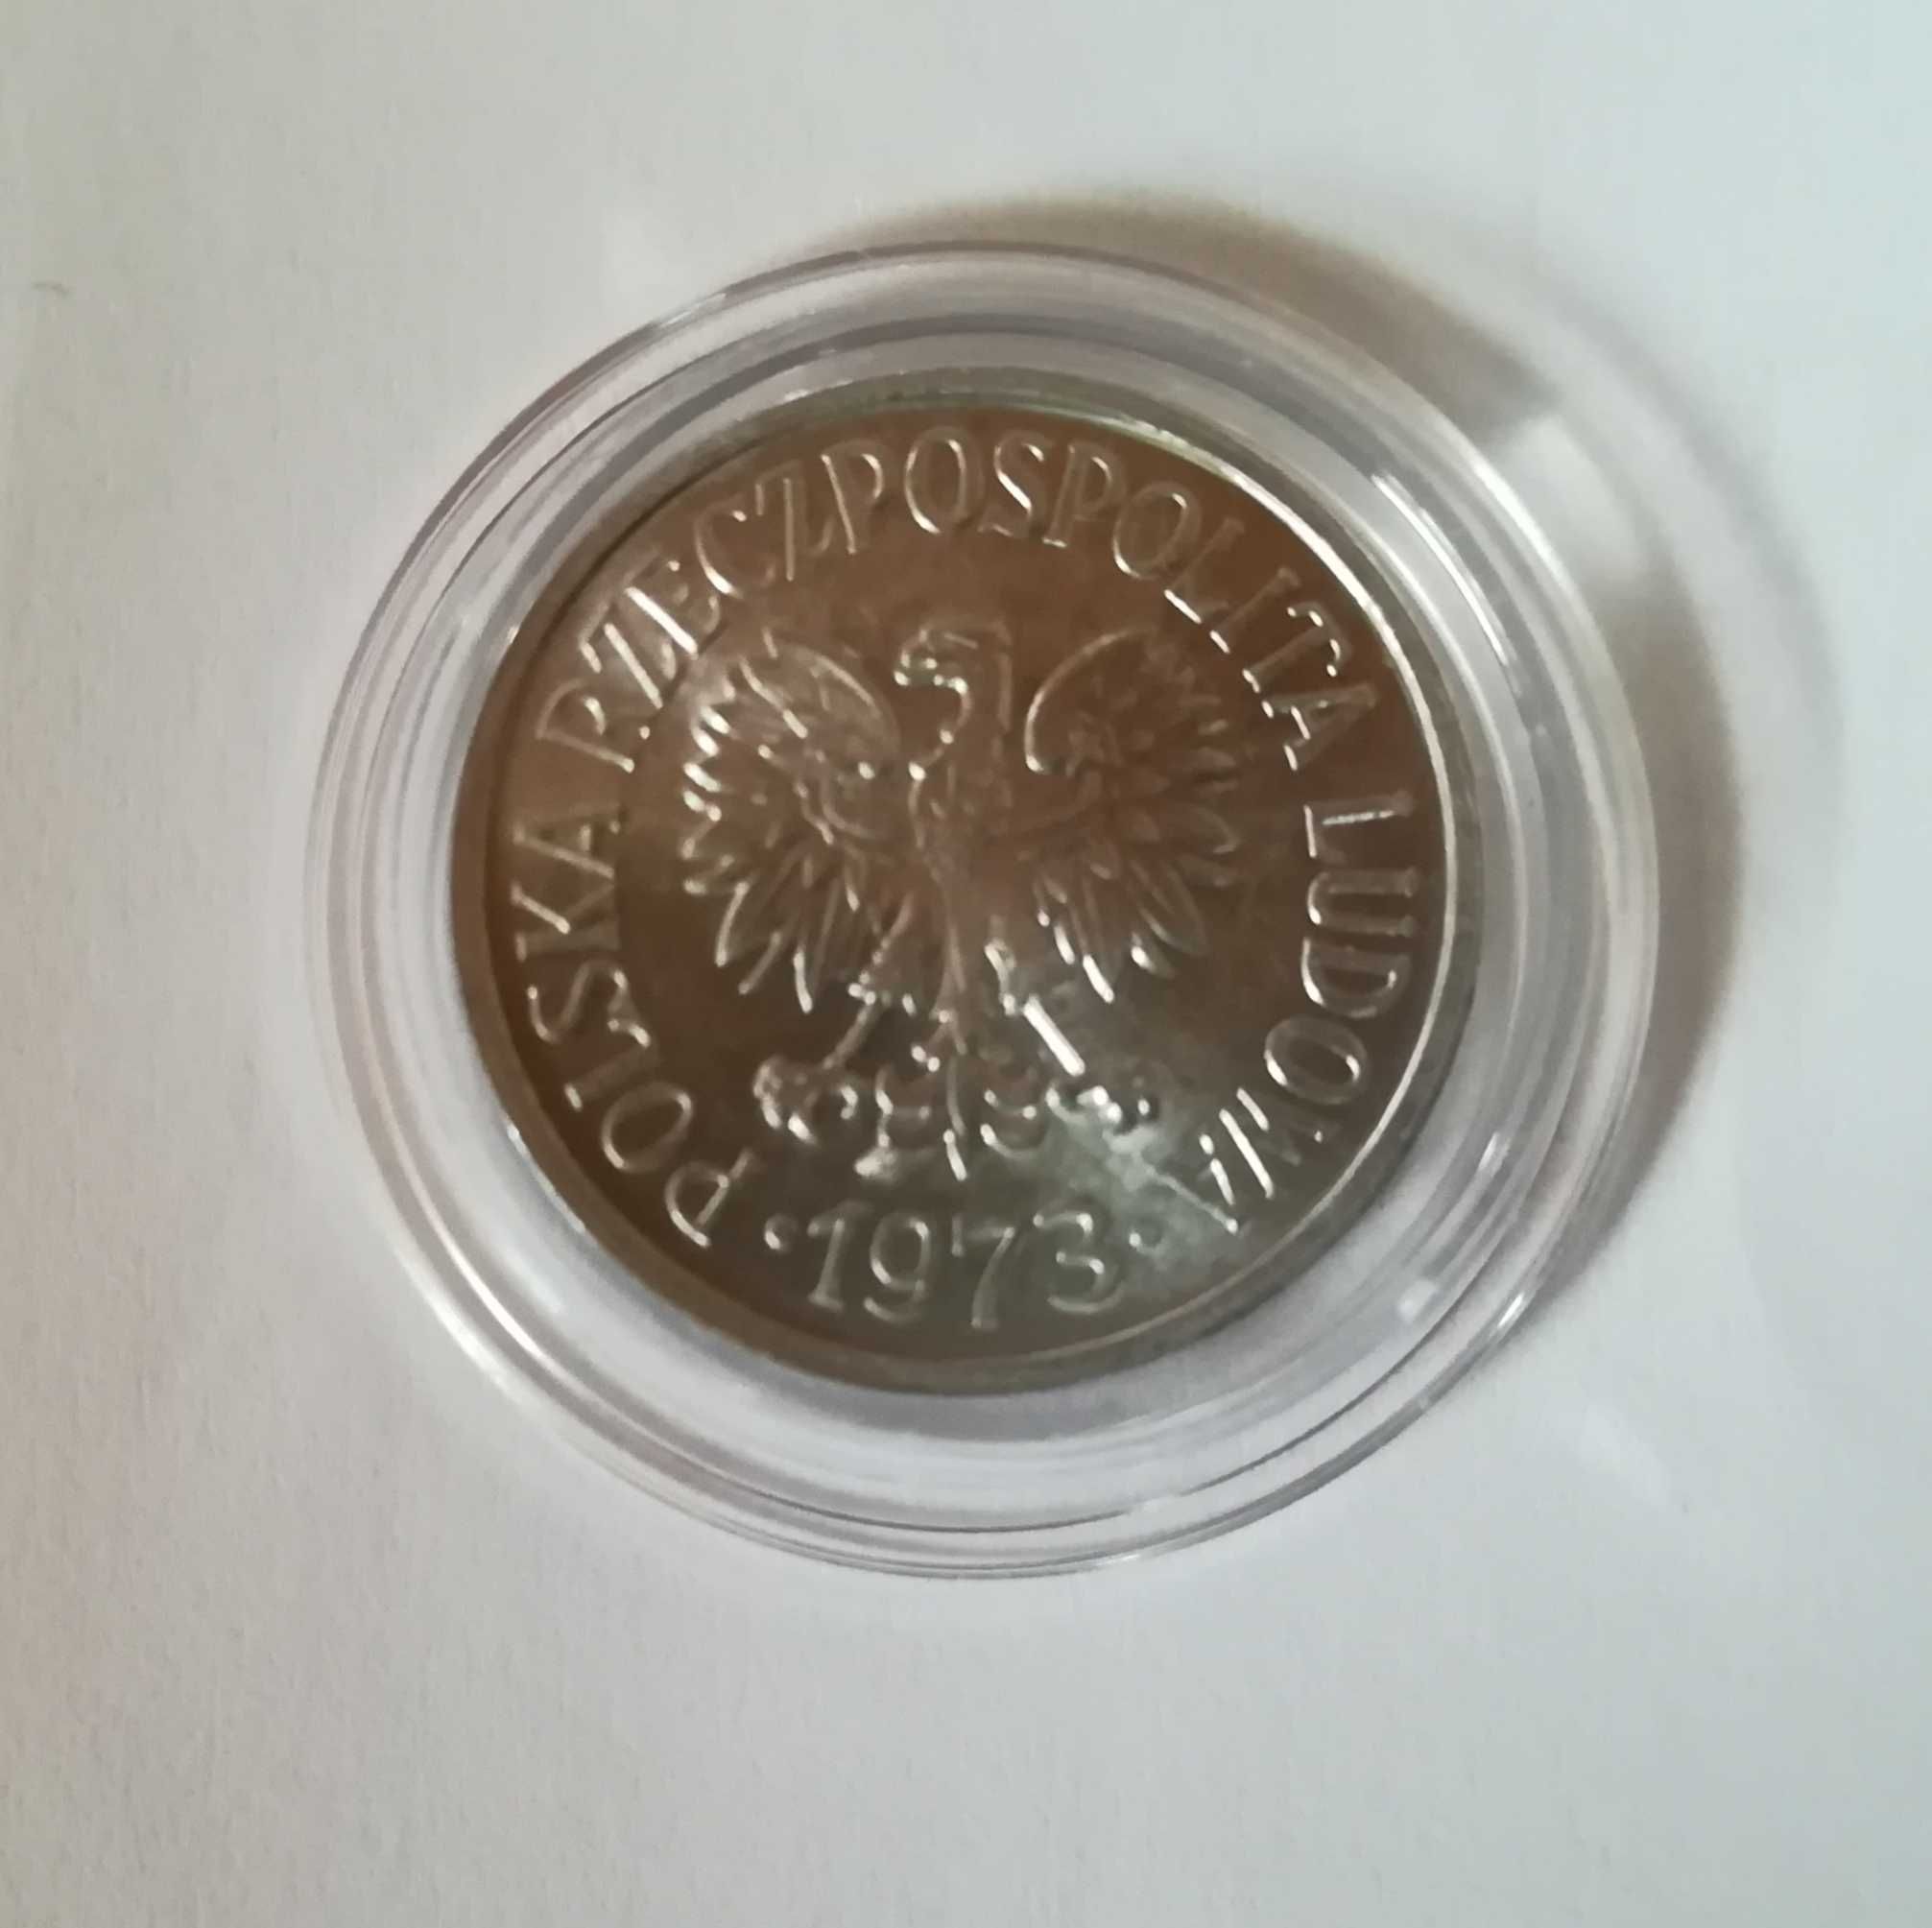 Moneta 20 gr z 1973 r, stan menniczy. Bez znaku mennicy.